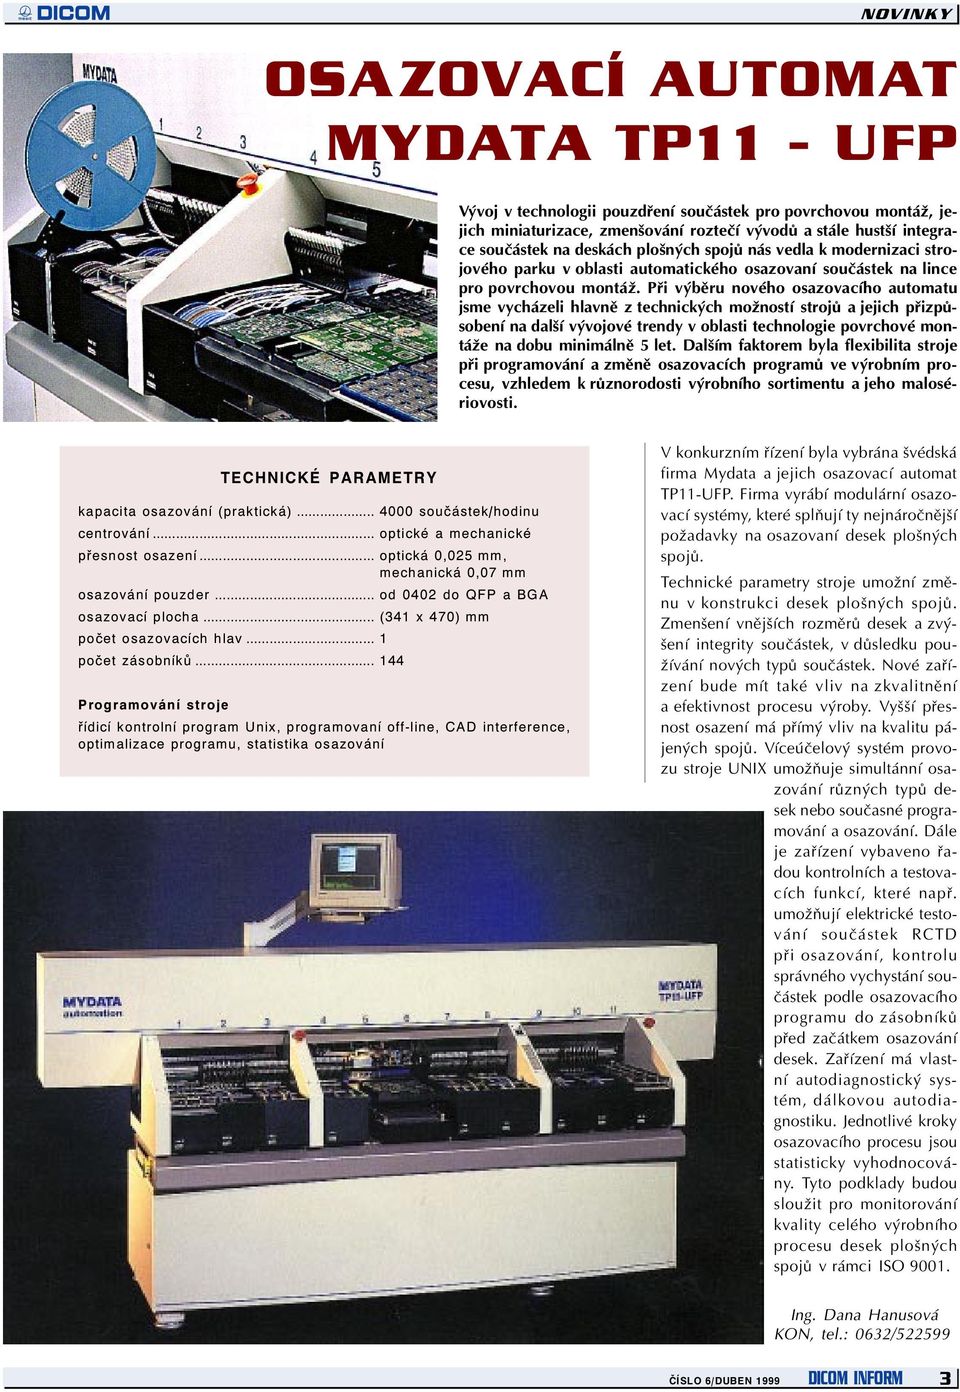 V TOMTO ÈÍSLE TECHNOLOGIE A DICOM ÈÍSLO 6 (2/99) DUBEN 1999 DICOM IN ORM  REKLAMNÍ ÈÁST, ADRESY TECHNOLOGIE A DICOM PDF Stažení zdarma